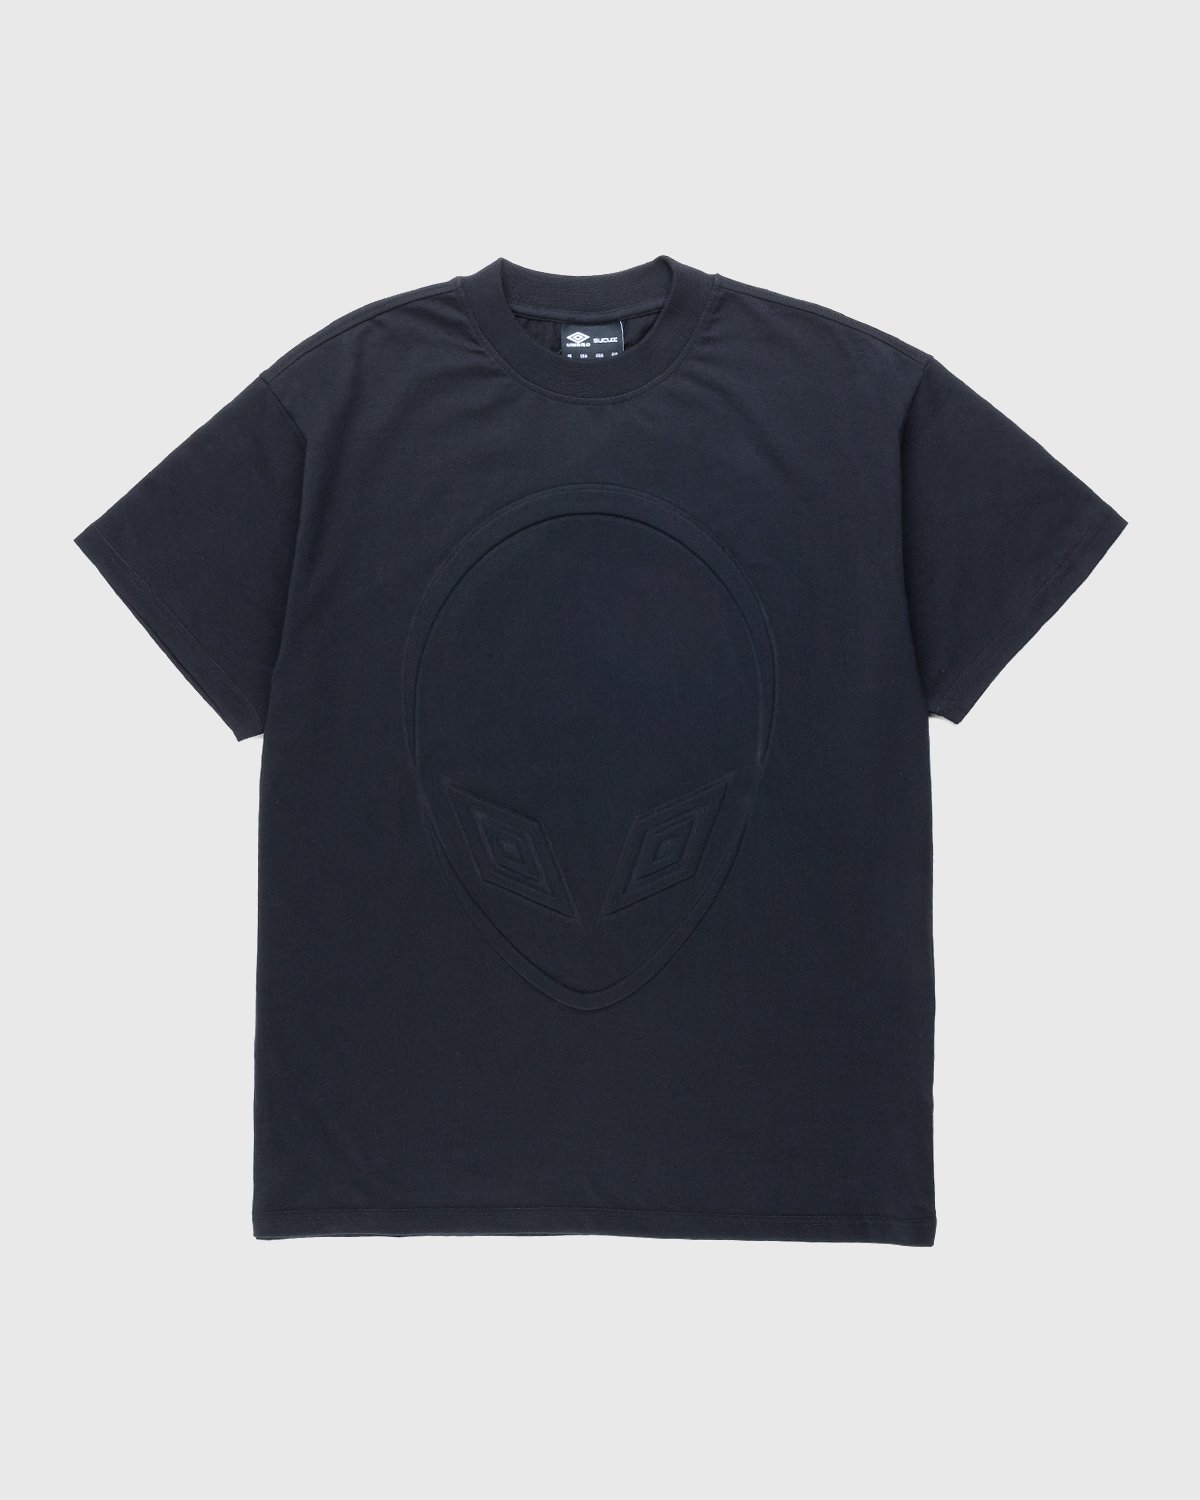 Umbro x Sucux - Oversize T-Shirt Black - Clothing - Black - Image 1